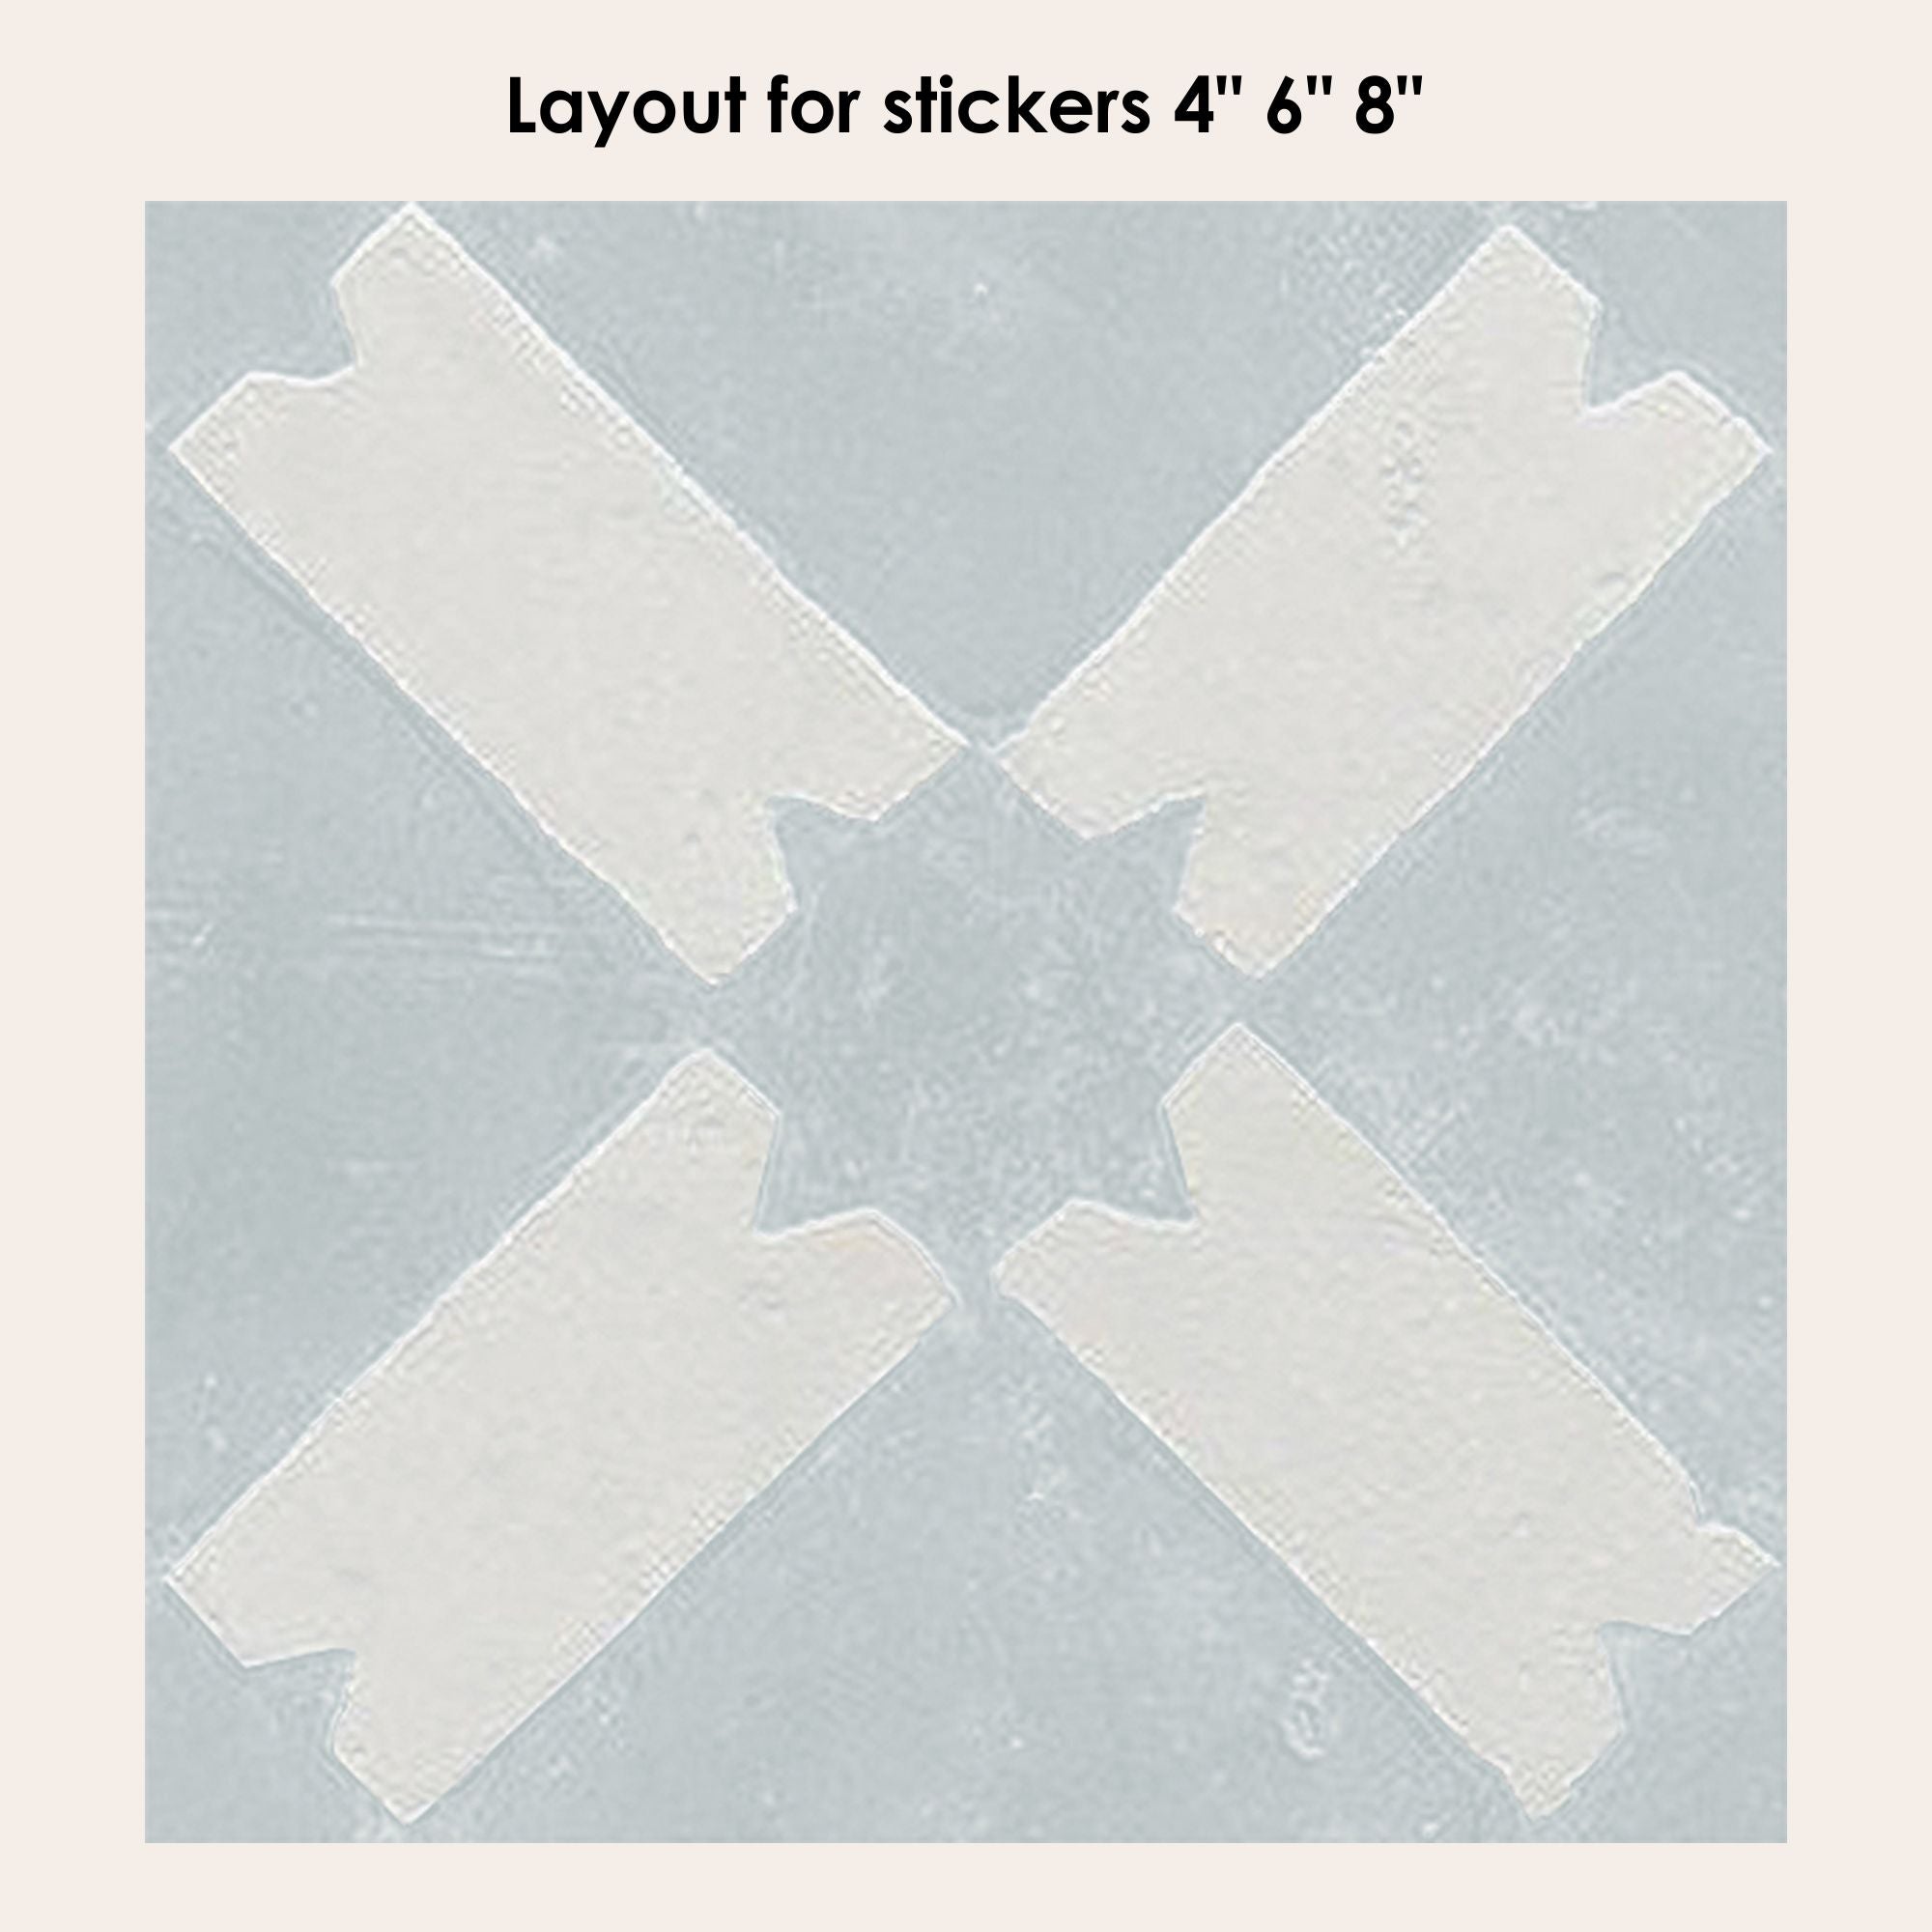 Riad in Chalk Vinyl Tile Sticker